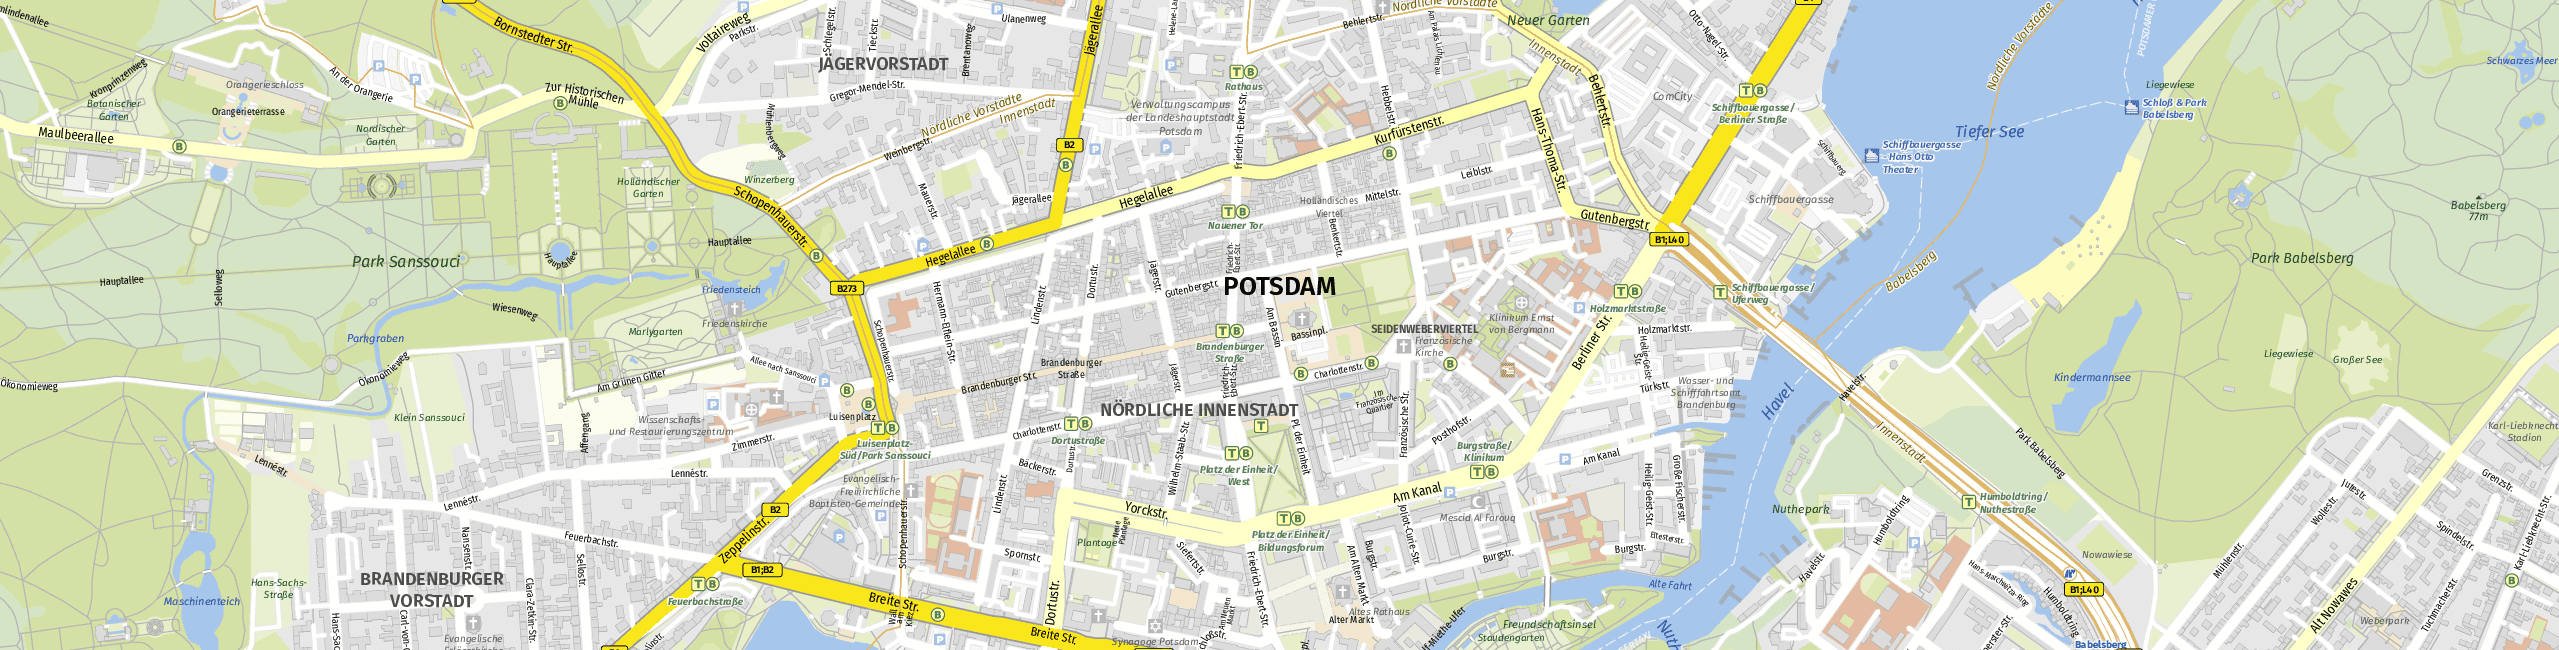 Stadtplan Potsdam zum Downloaden.